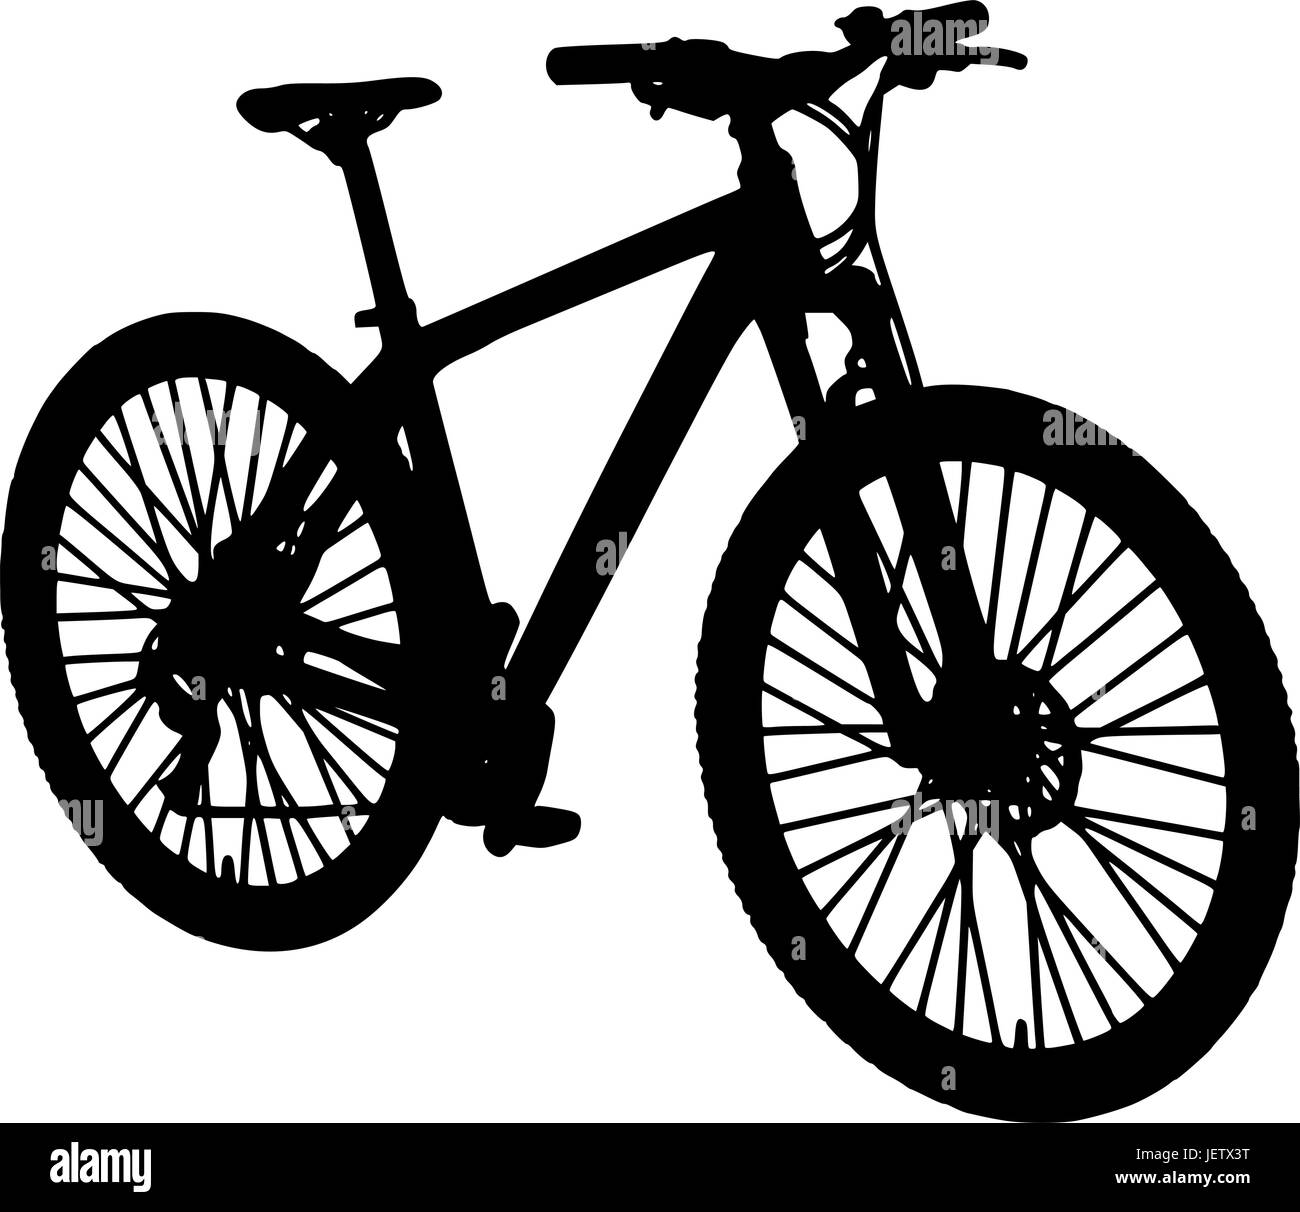 Fahrradspeichen Stock-Vektorgrafiken kaufen - Alamy